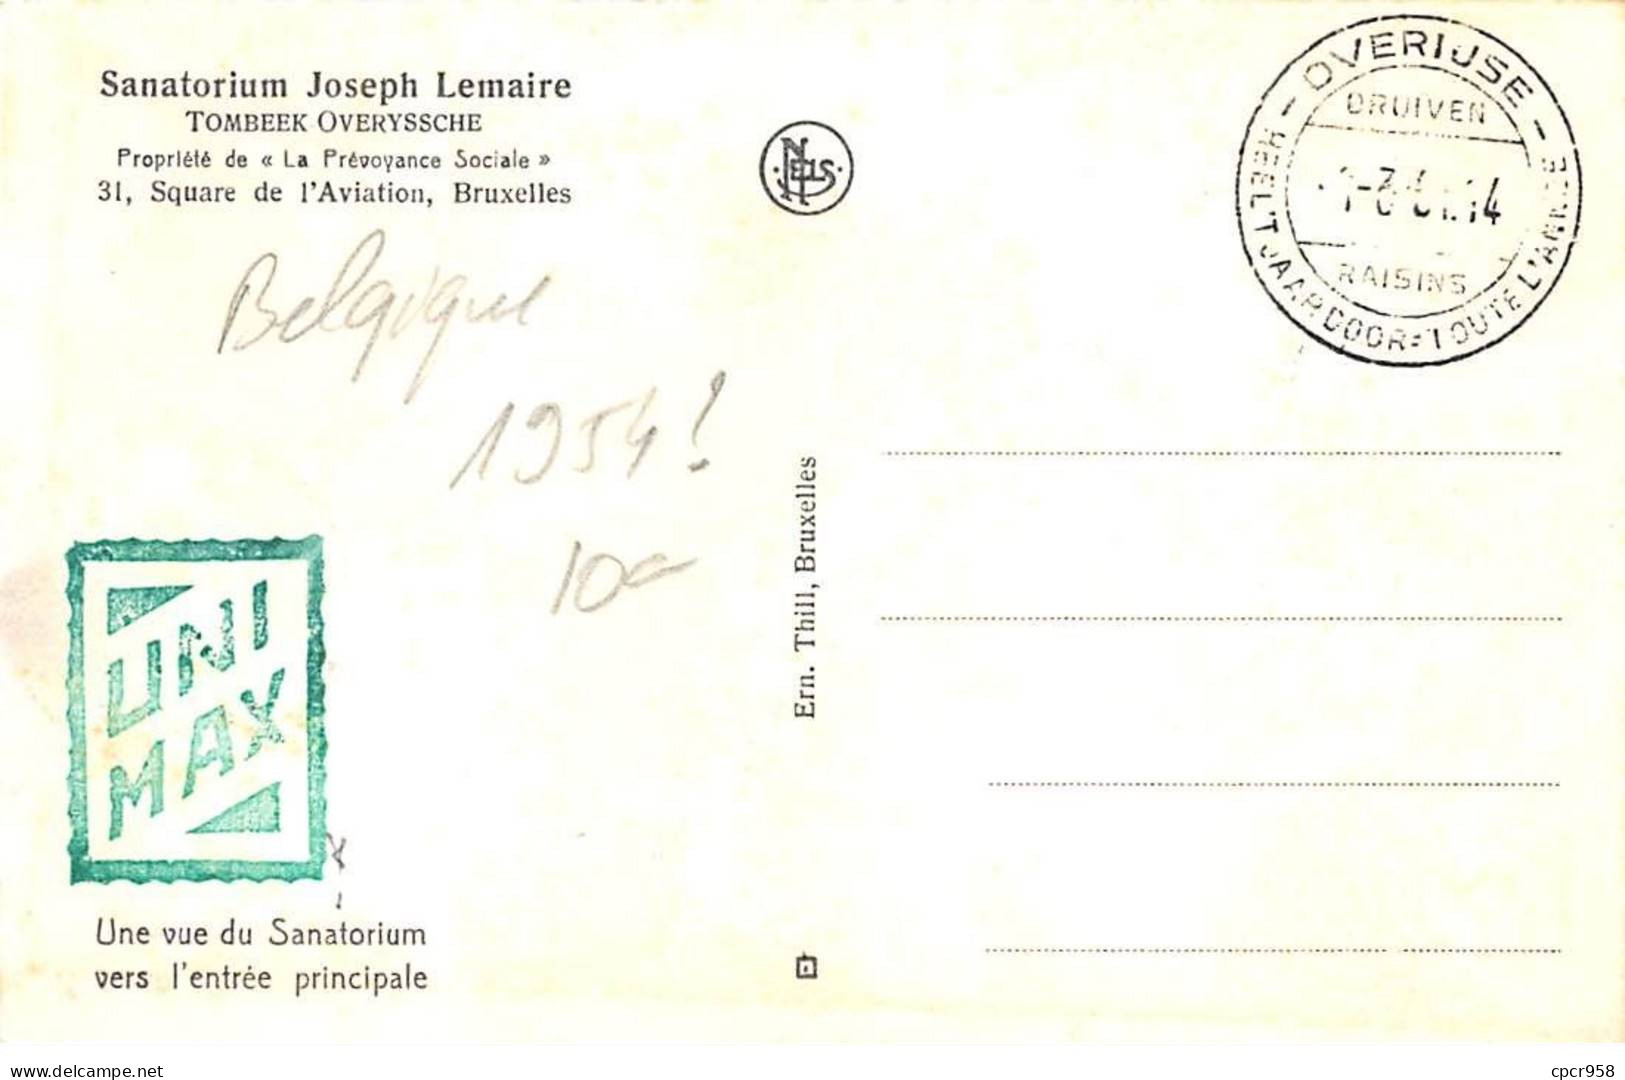 BELGIQUE.Carte Maximum.AM14093.1954.Cachet Overiuse.Vue Du Sanatorium Joseph Lemaire.Prévoyance Sociale - Usados